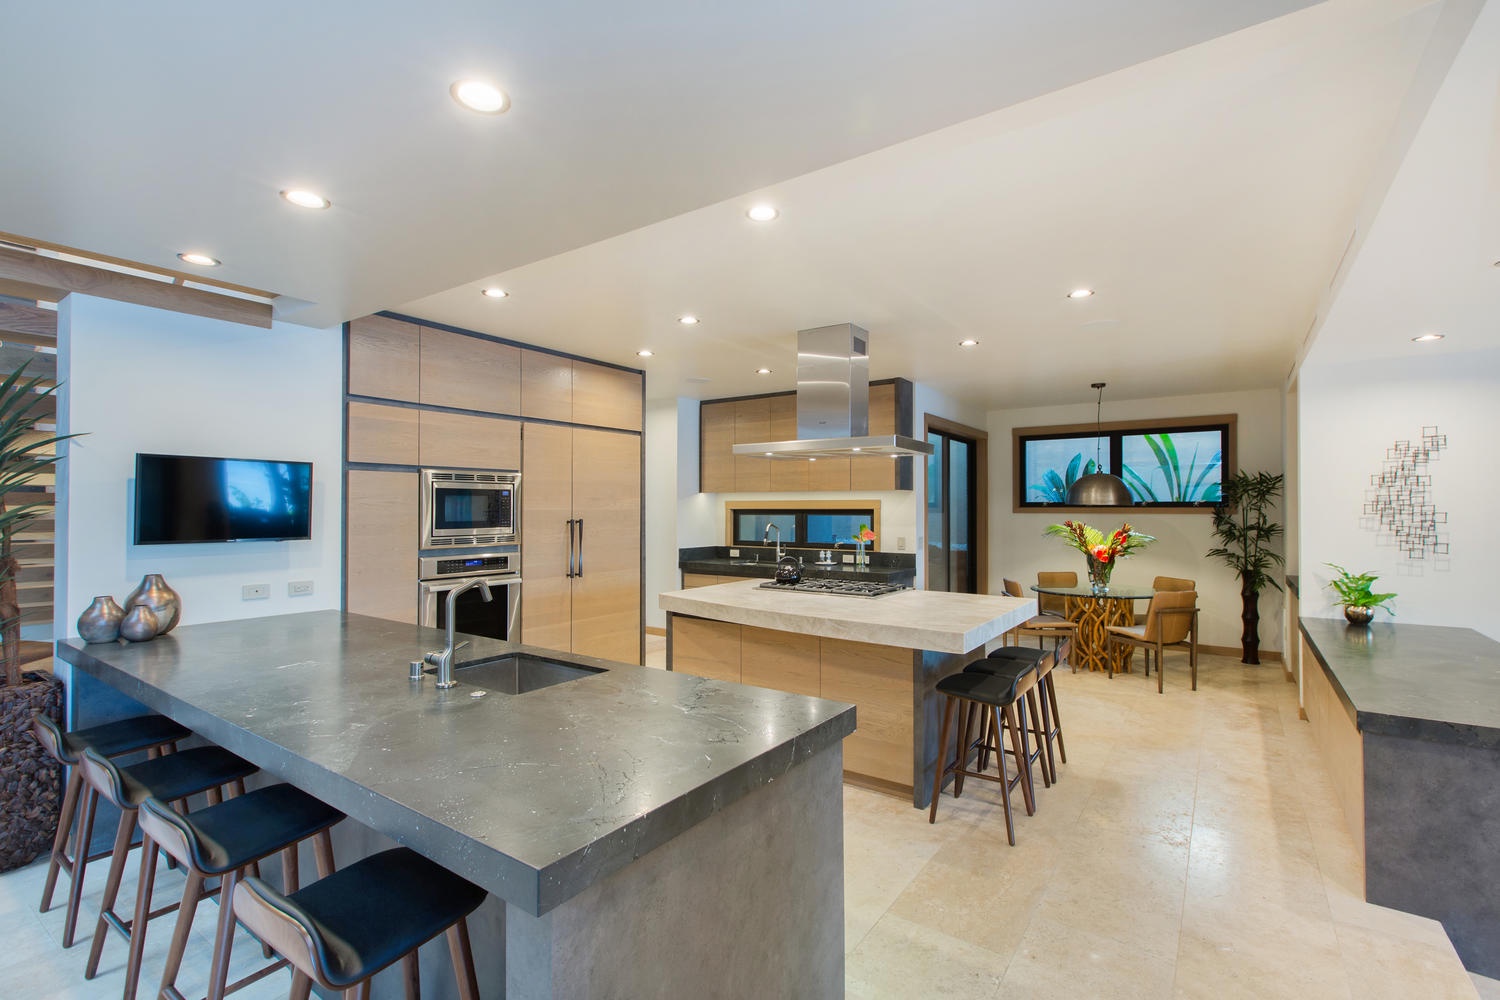 Honolulu Vacation Rentals, Ocean House 4 Bedroom - Open kitchen